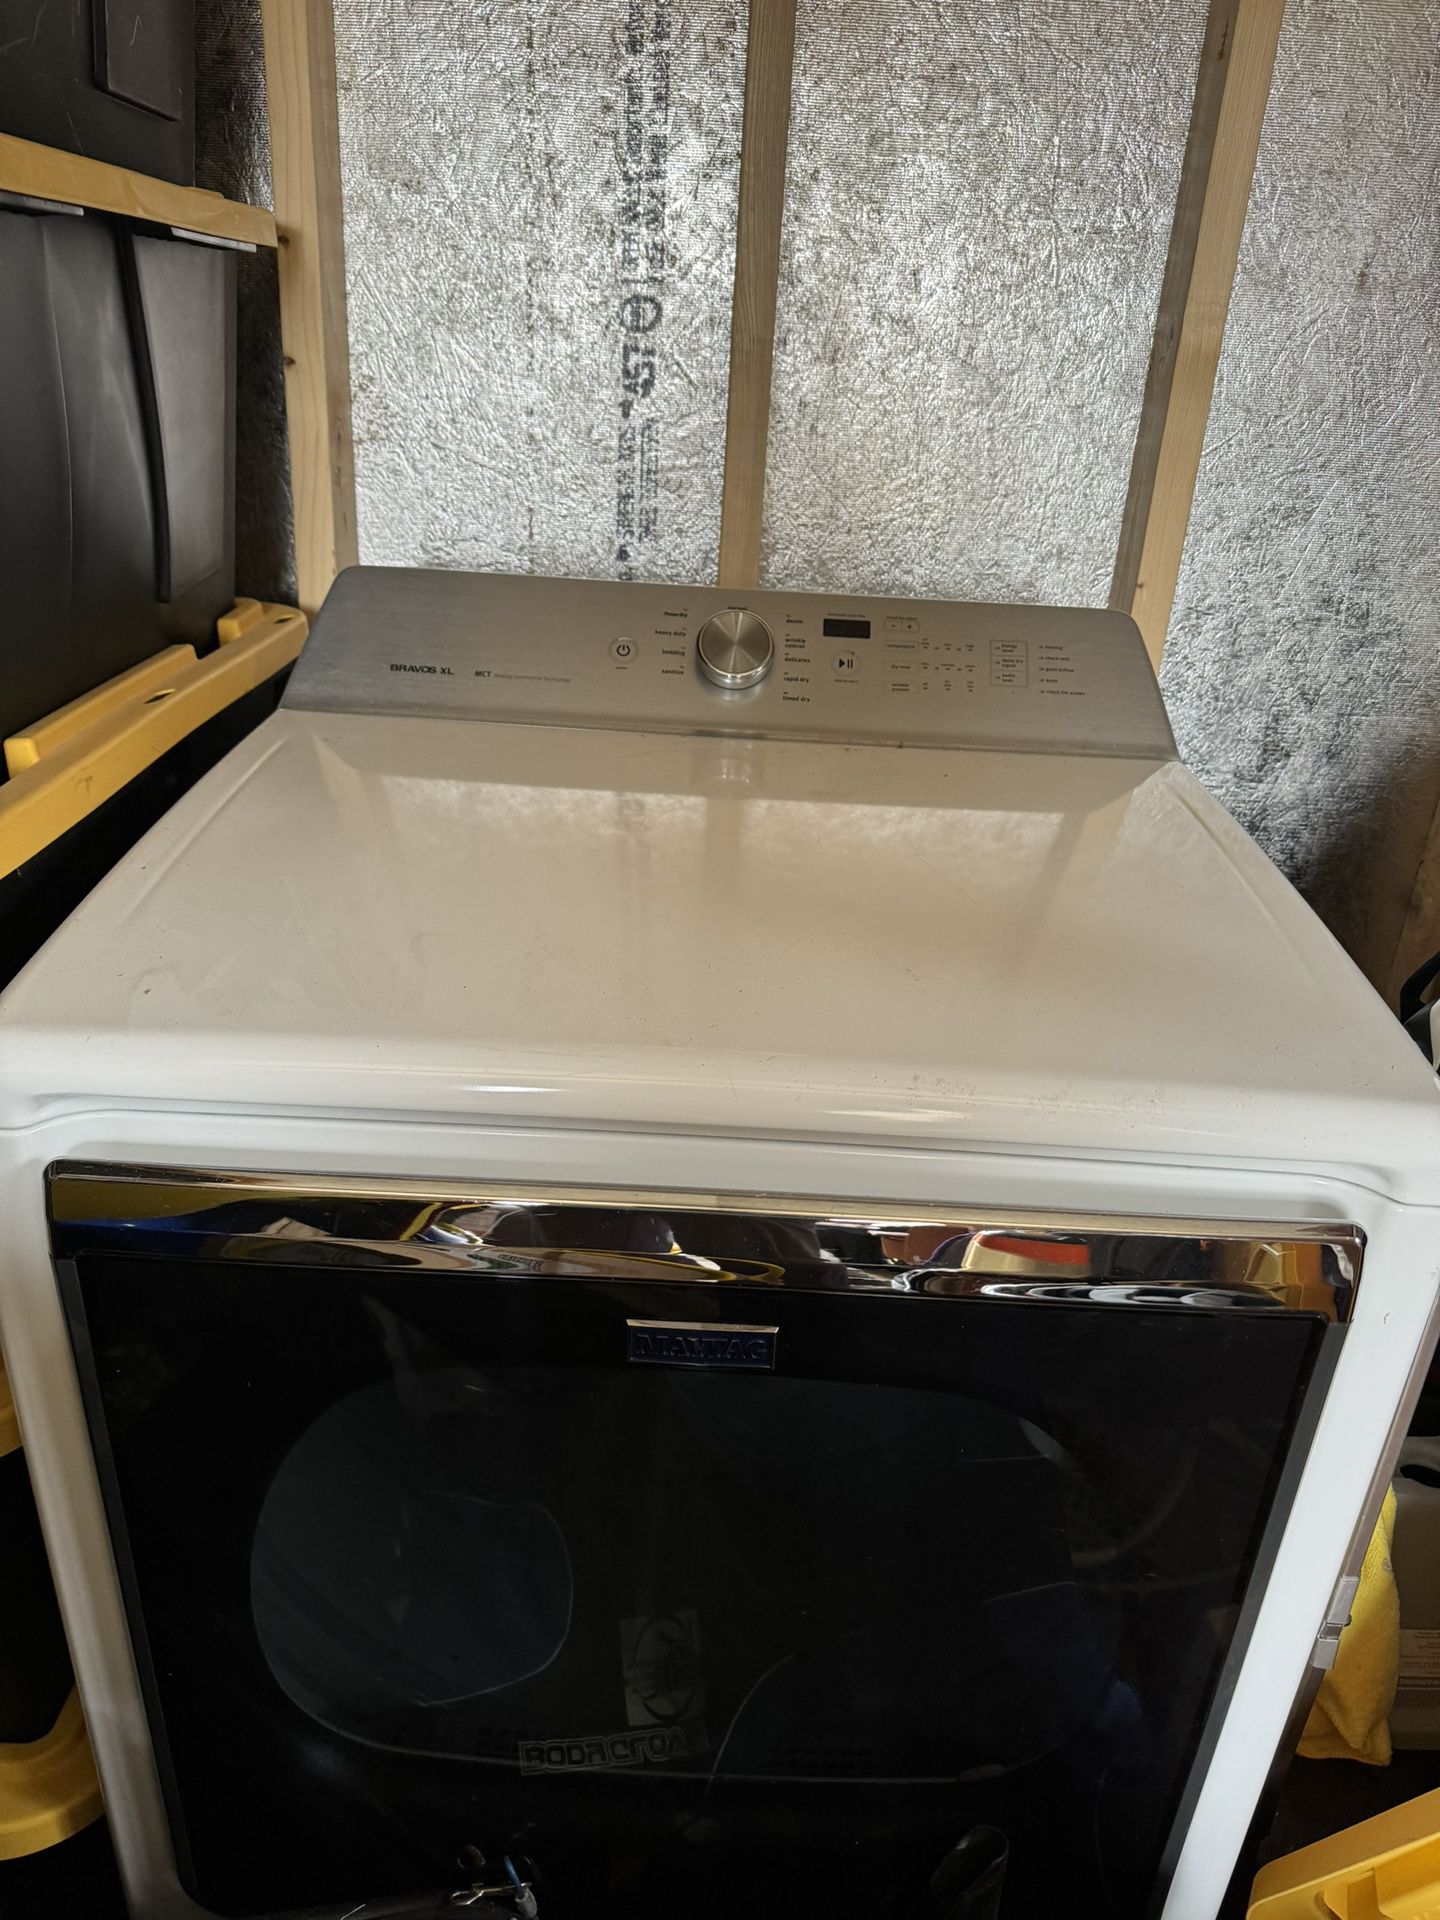 Maytag Dryer (Electric)